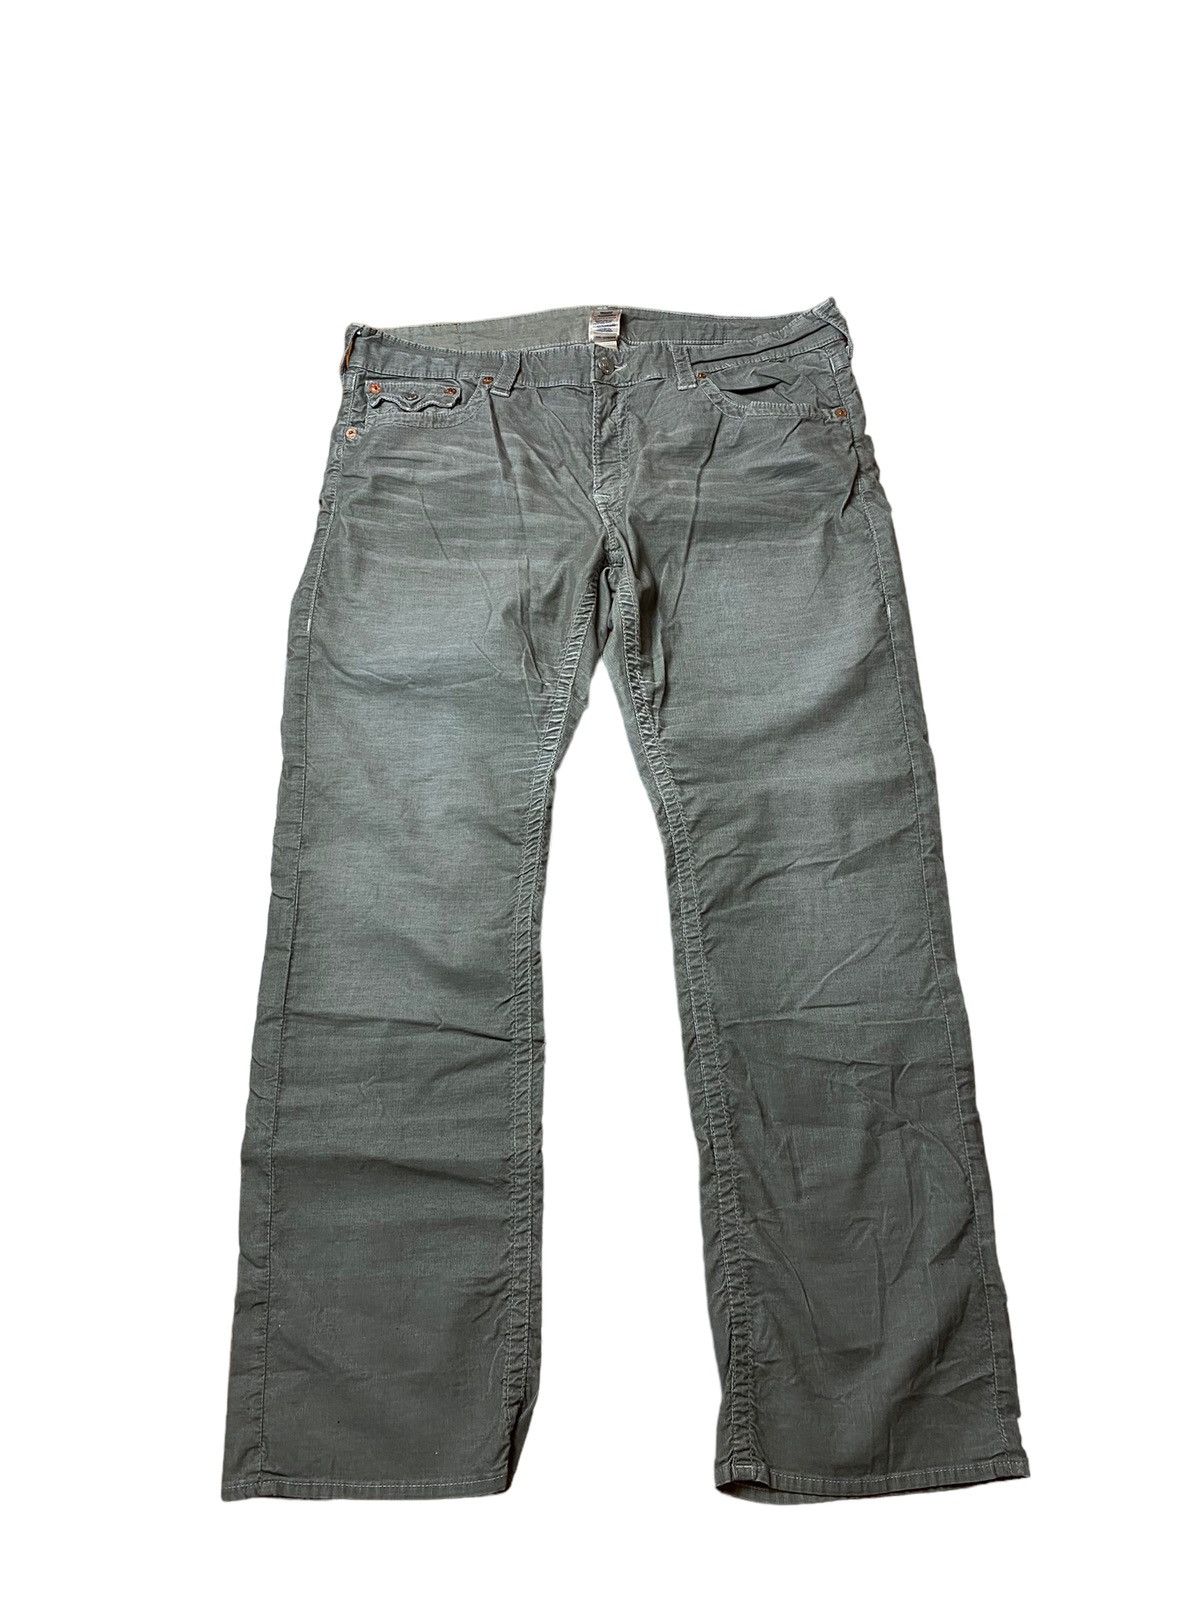 True Religion True Religion Ricky Corduroy Jeans Size 40x32 | Grailed